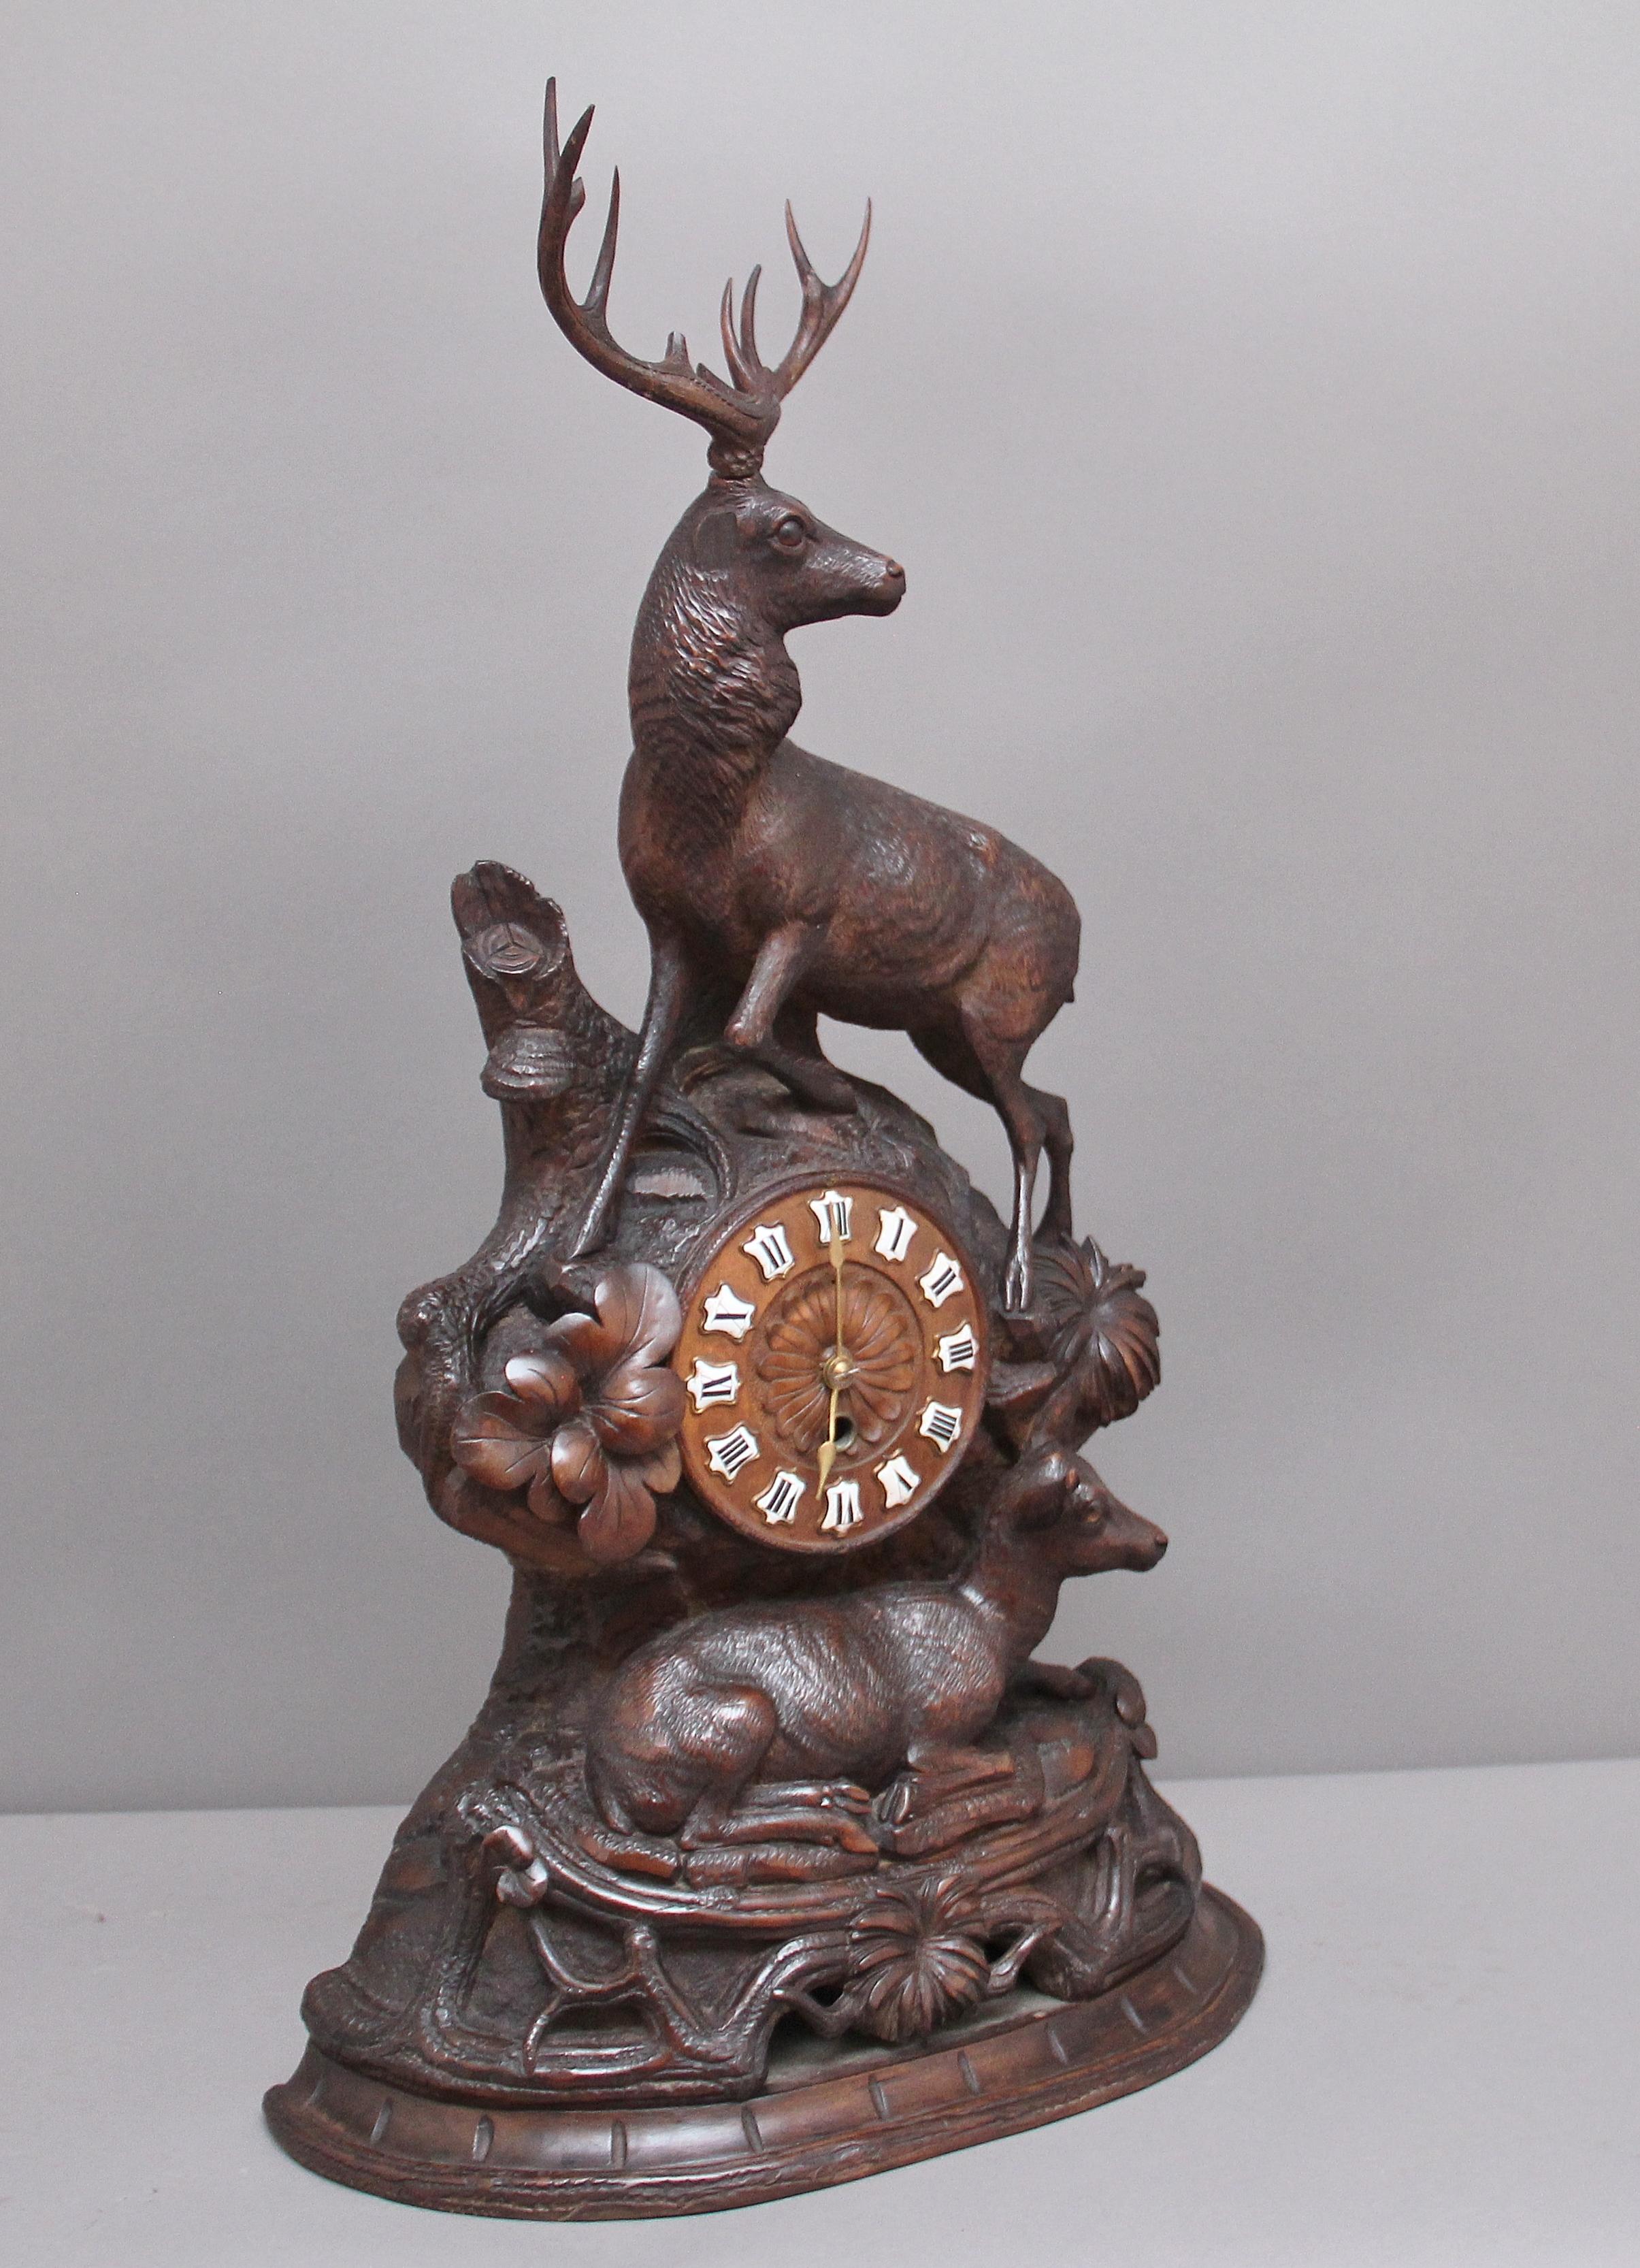 Eine hervorragende Qualität 19. Jahrhundert Nussbaum Schwarzwald Mantel Uhr, die Uhr Zifferblatt befindet sich in der Mitte in einem Felsen Gesicht von verschiedenen Blättern mit einer Hirschkuh unten und oben umgeben. Das Uhrwerk wurde vor kurzem